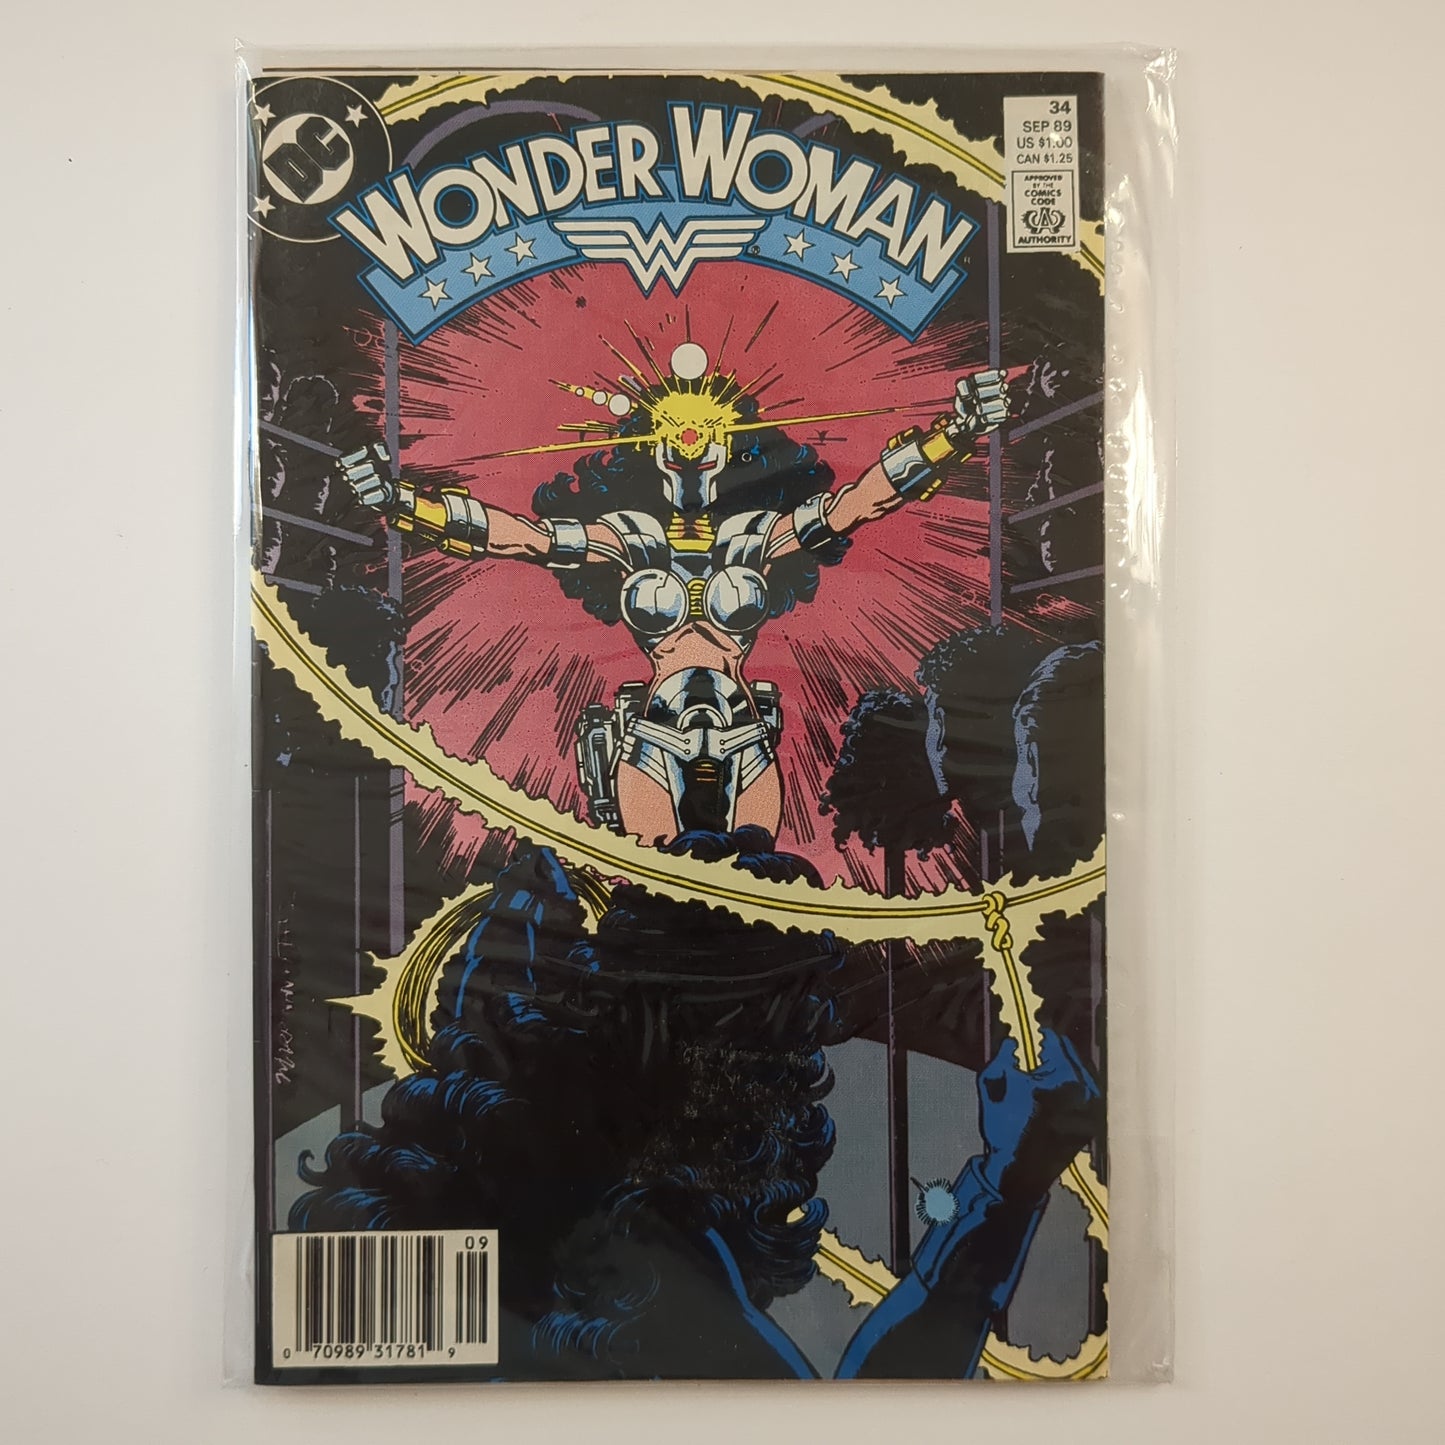 Wonder Woman (1987)